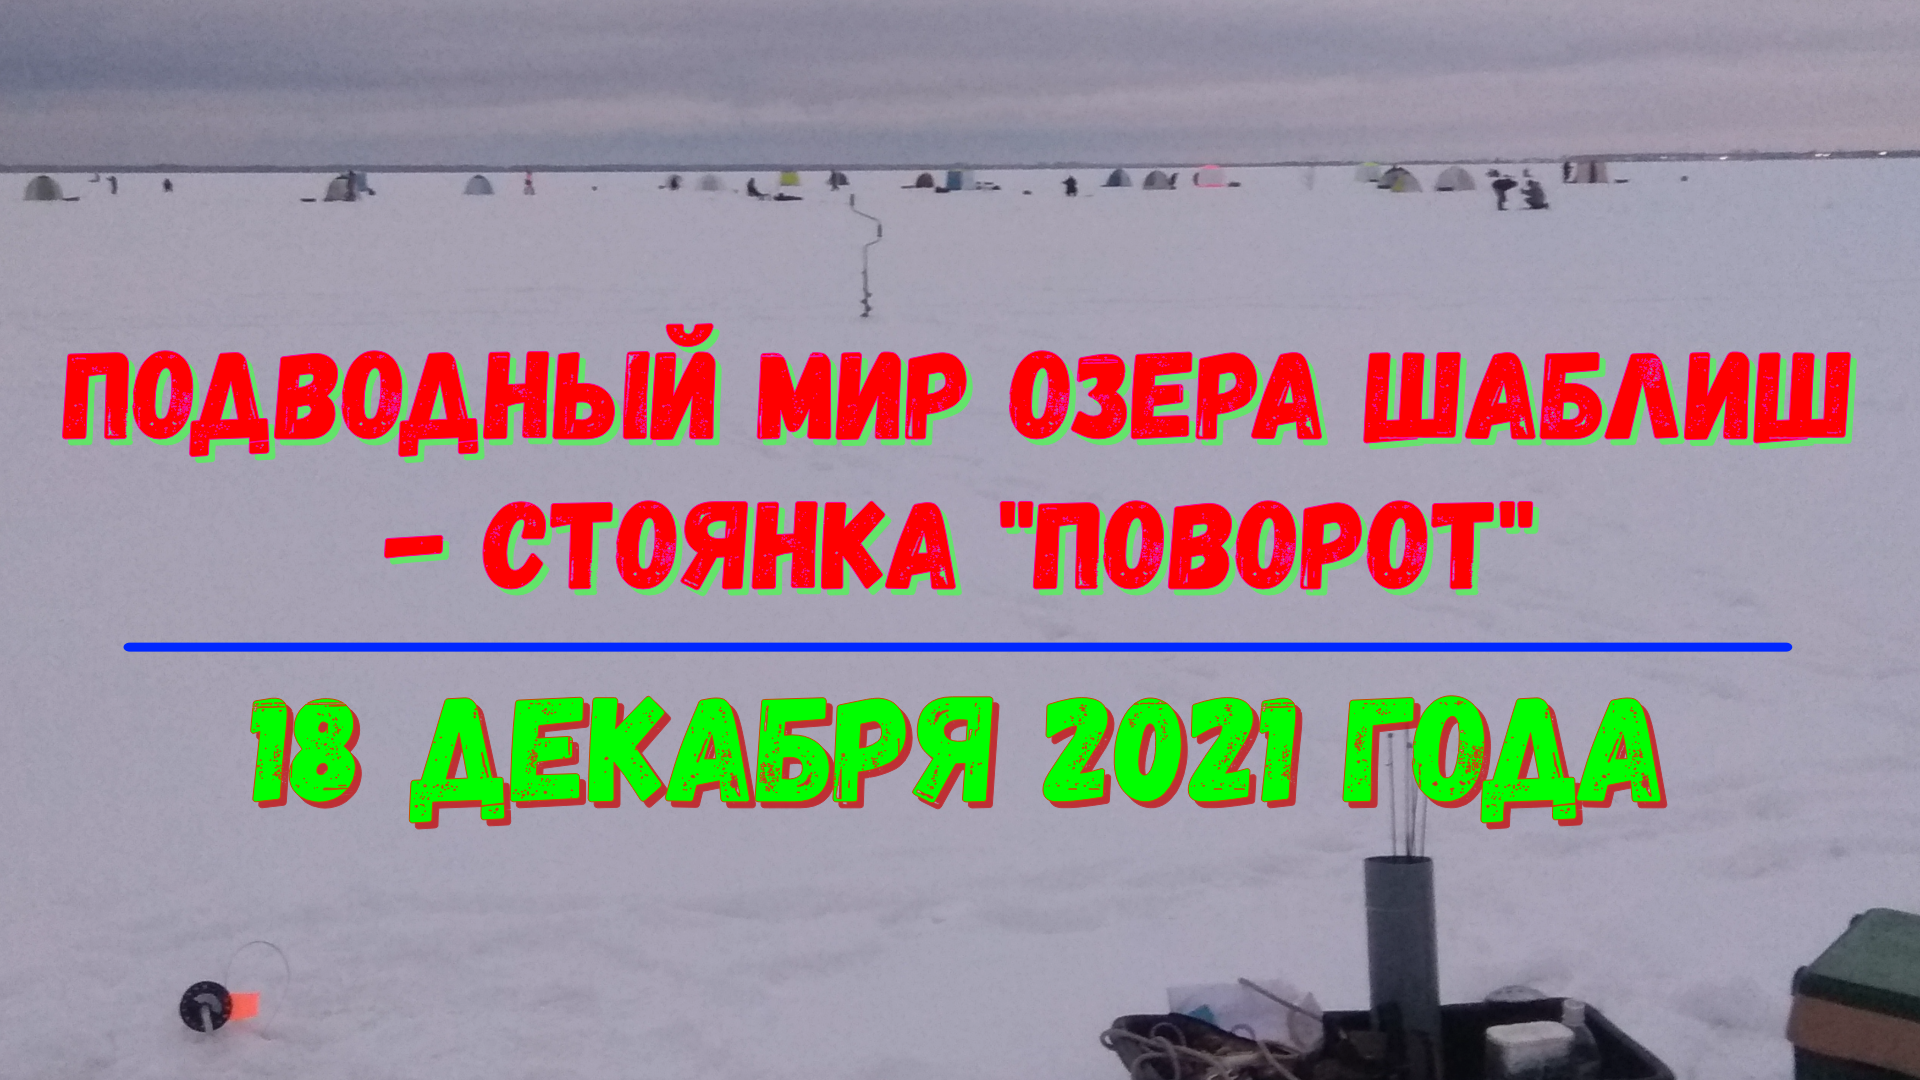 Подводный мир озера Шаблиш - стоянка Поворот - 18.12.2021 год